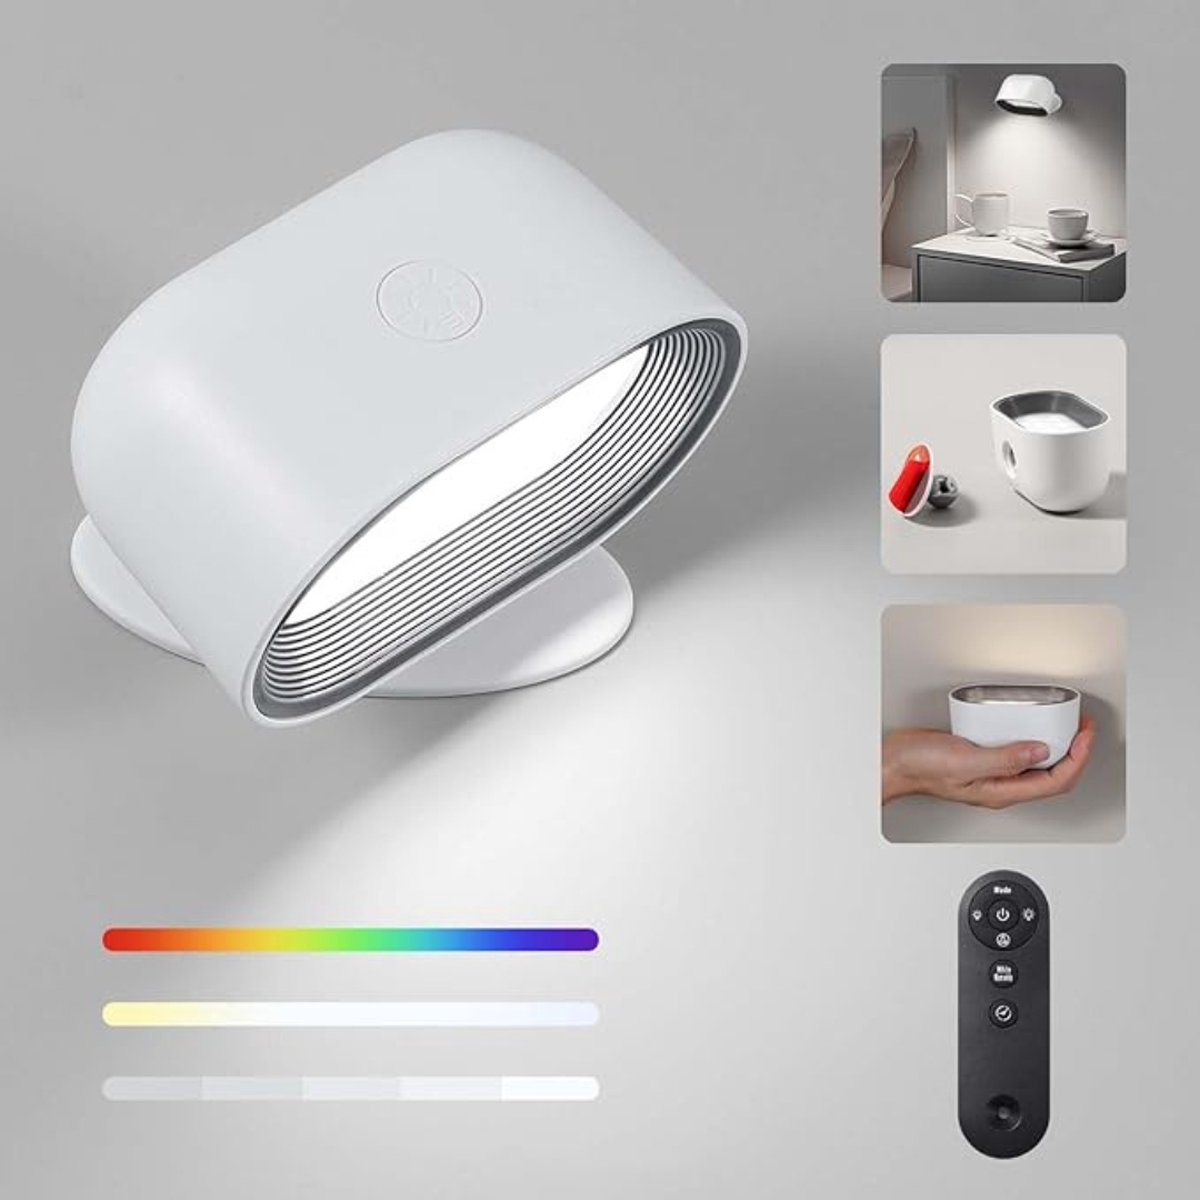 Wandlamp – Oplaadbaar – LED Verlichting – 6 Kleuren – 3 Warmtestanden – Instelbare Helderheid – met Timer – Binnen – met Afstandsbediening – Modern Design - Wit